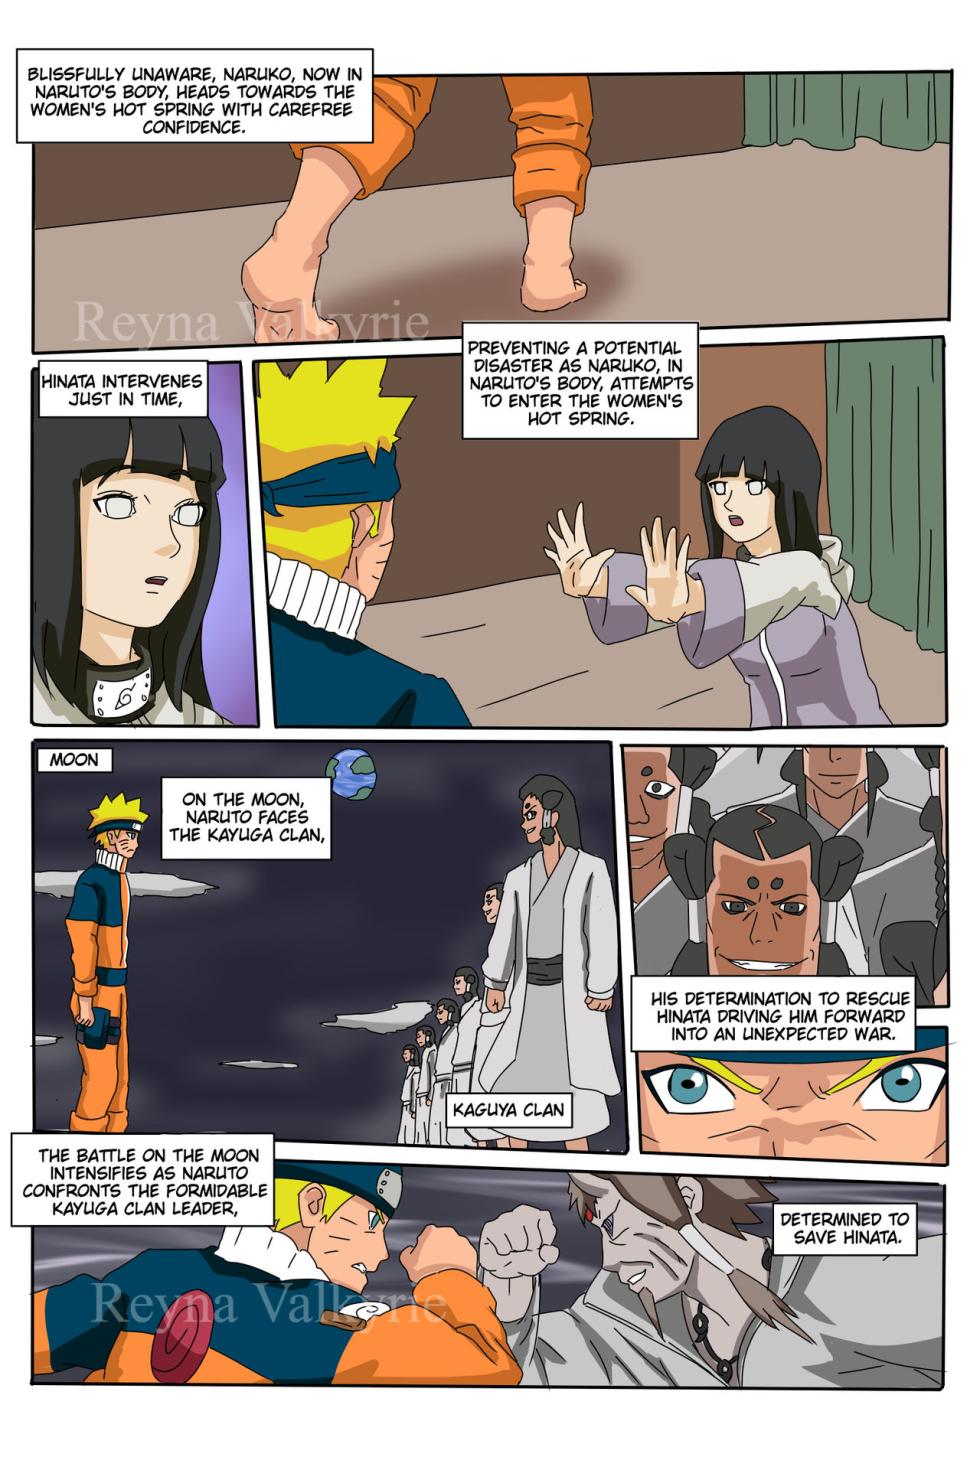 (Reynavalkyrie2)] NARU  (Naruto) - Page 2